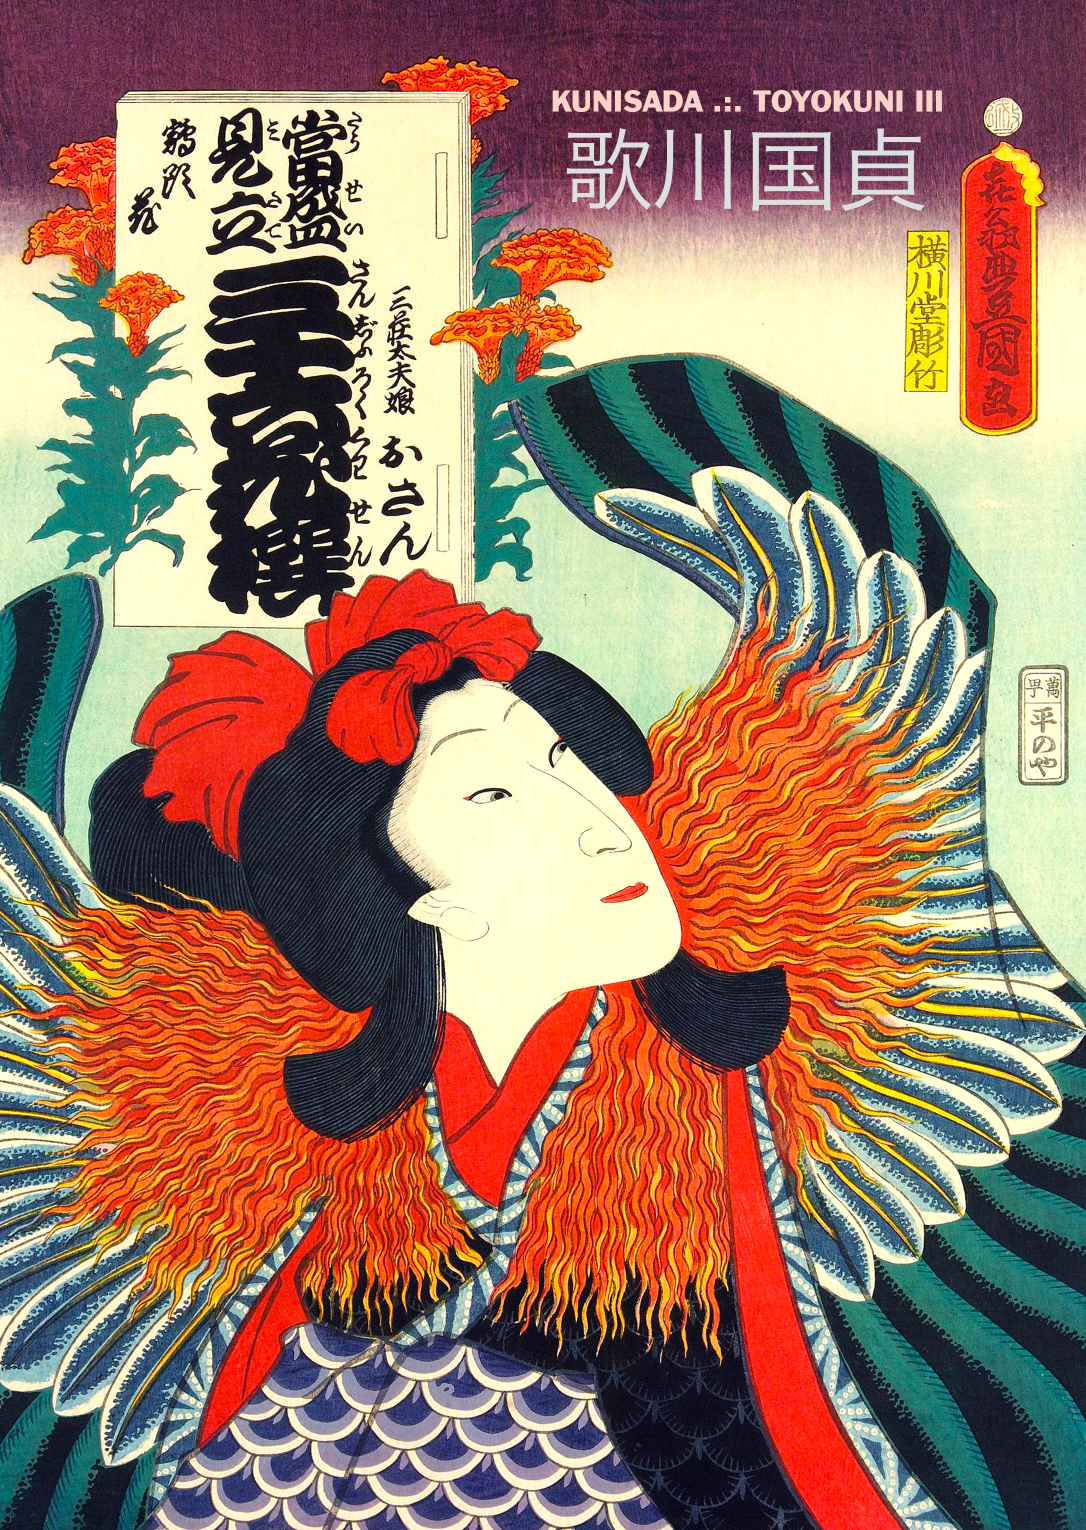 KUNISADA III | Illustrated eBooks Prints